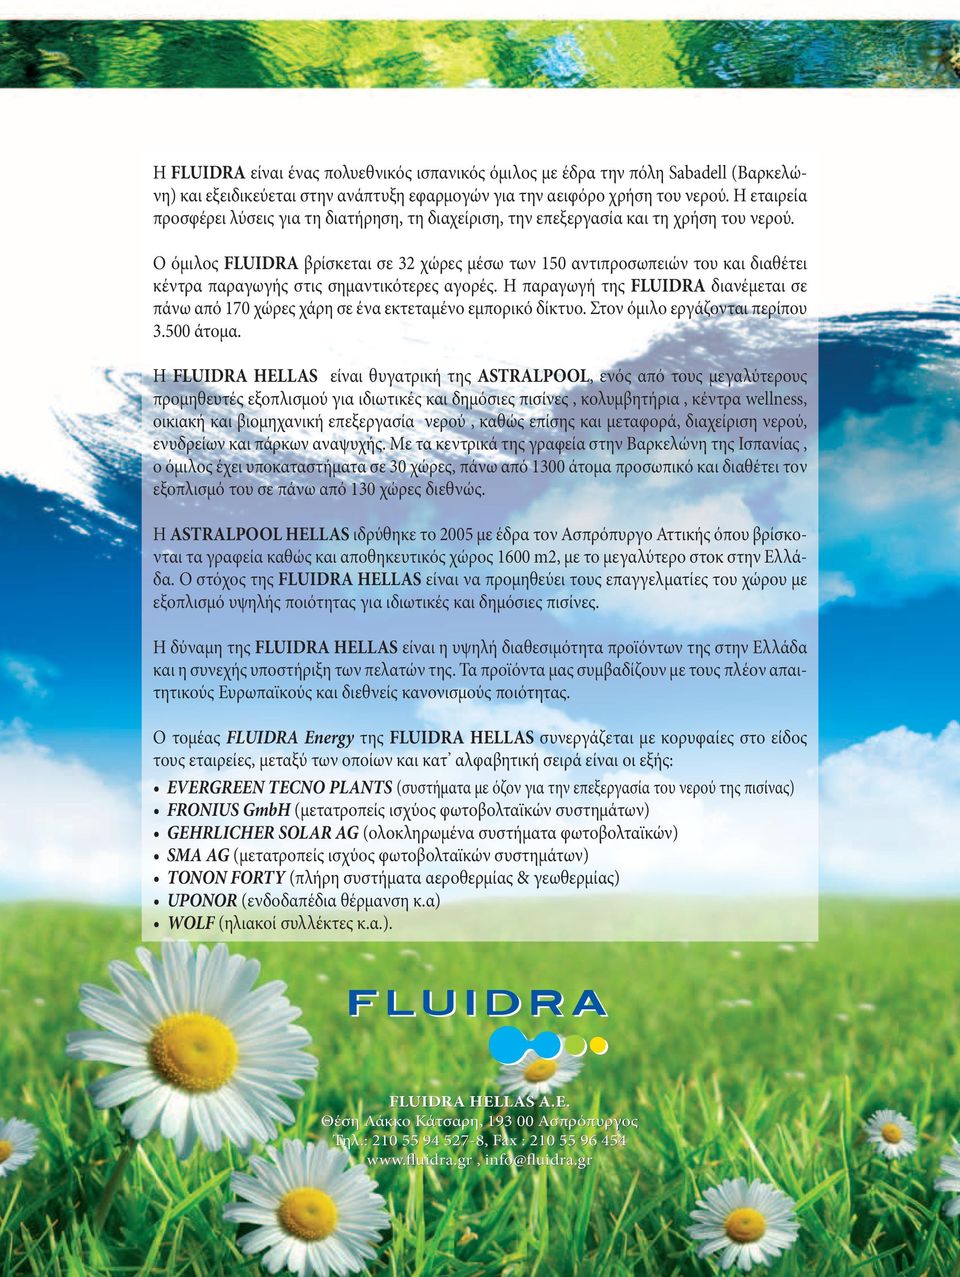 Ο όμιλος FLUIDRA βρίσκεται σε 32 χώρες μέσω των 150 αντιπροσωπειών του και διαθέτει κέντρα παραγωγής στις σημαντικότερες αγορές.